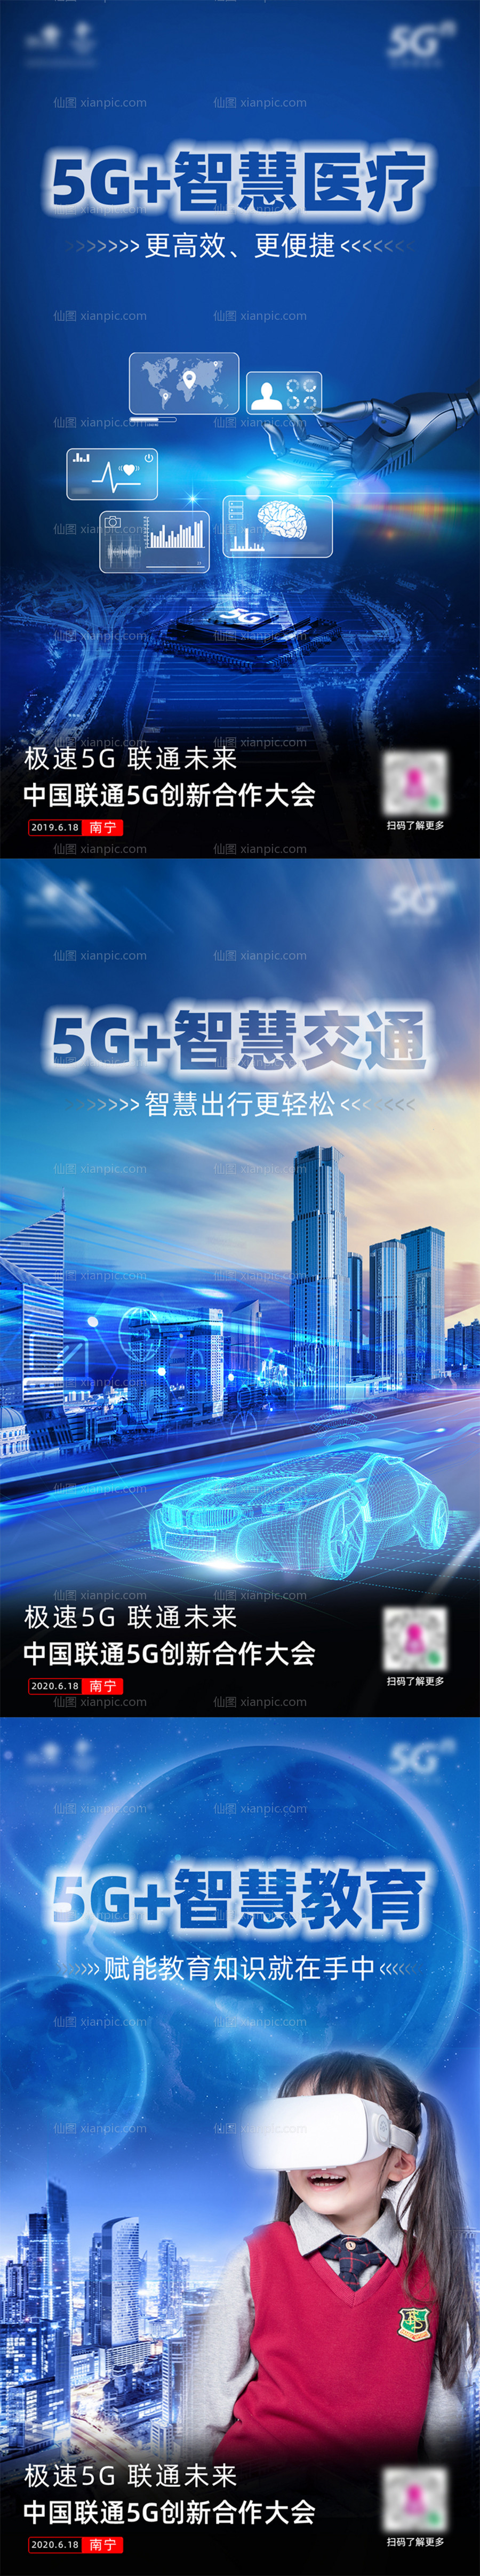 素材乐-5G赋能科技系列海报